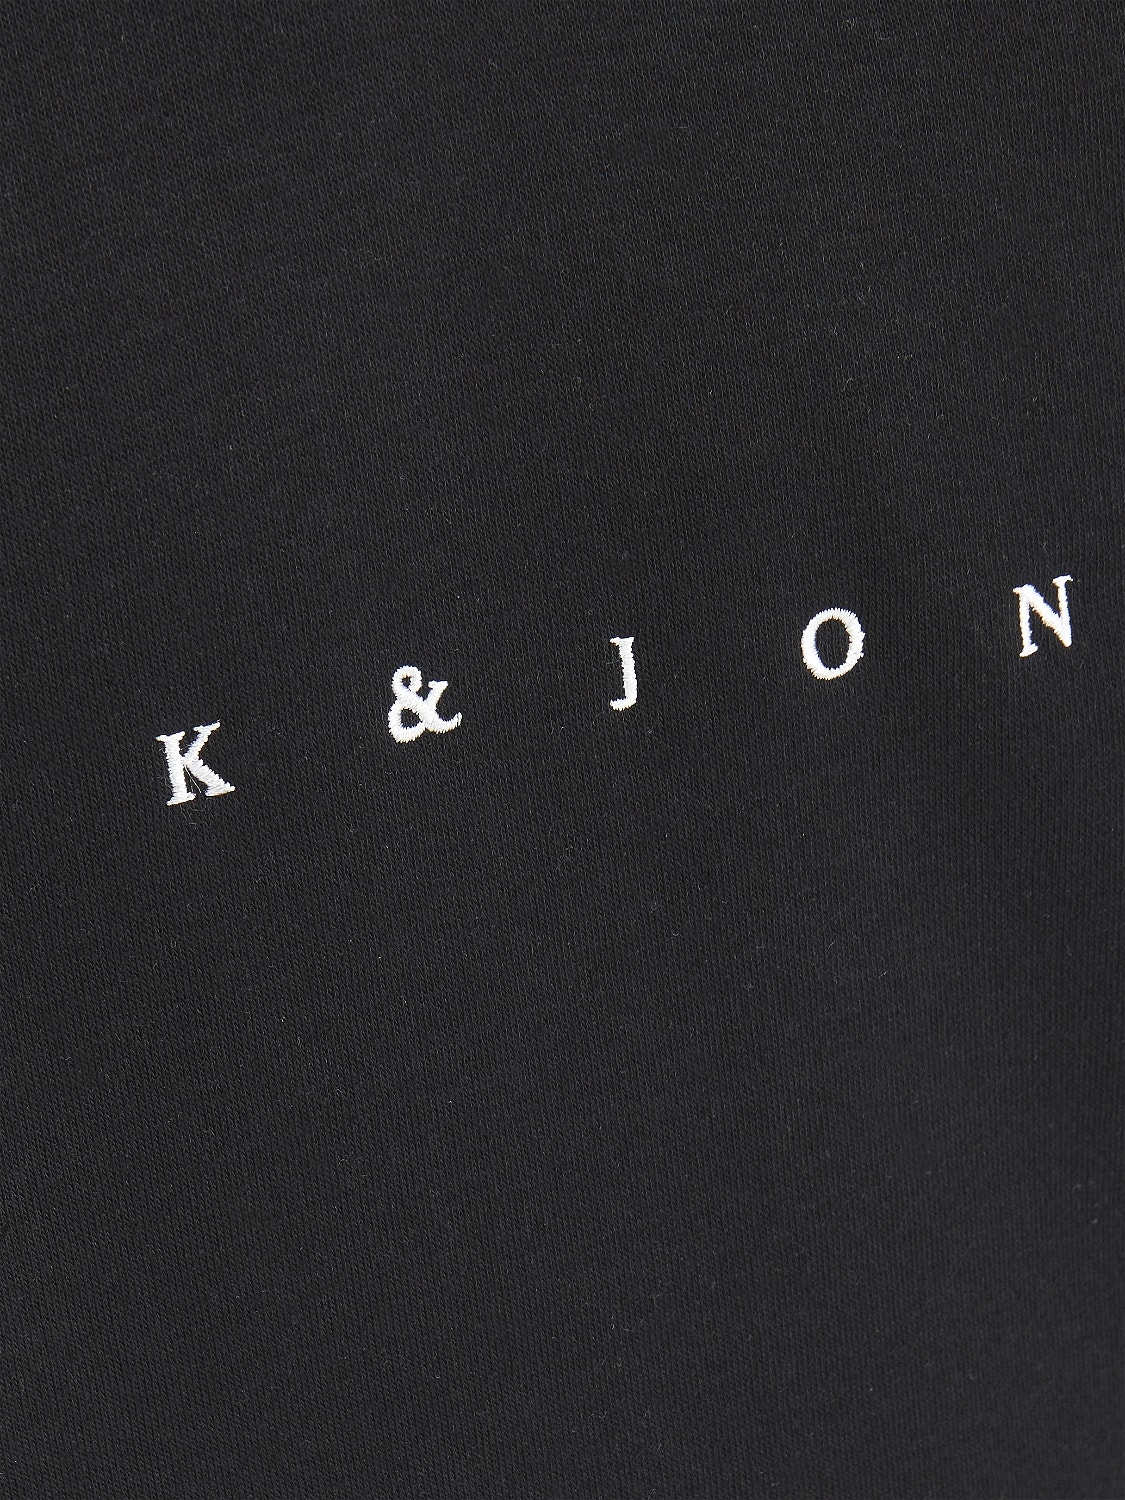 Jack & Jones Sudadera con capucha Logotipo Para chicos -Black - 12214983